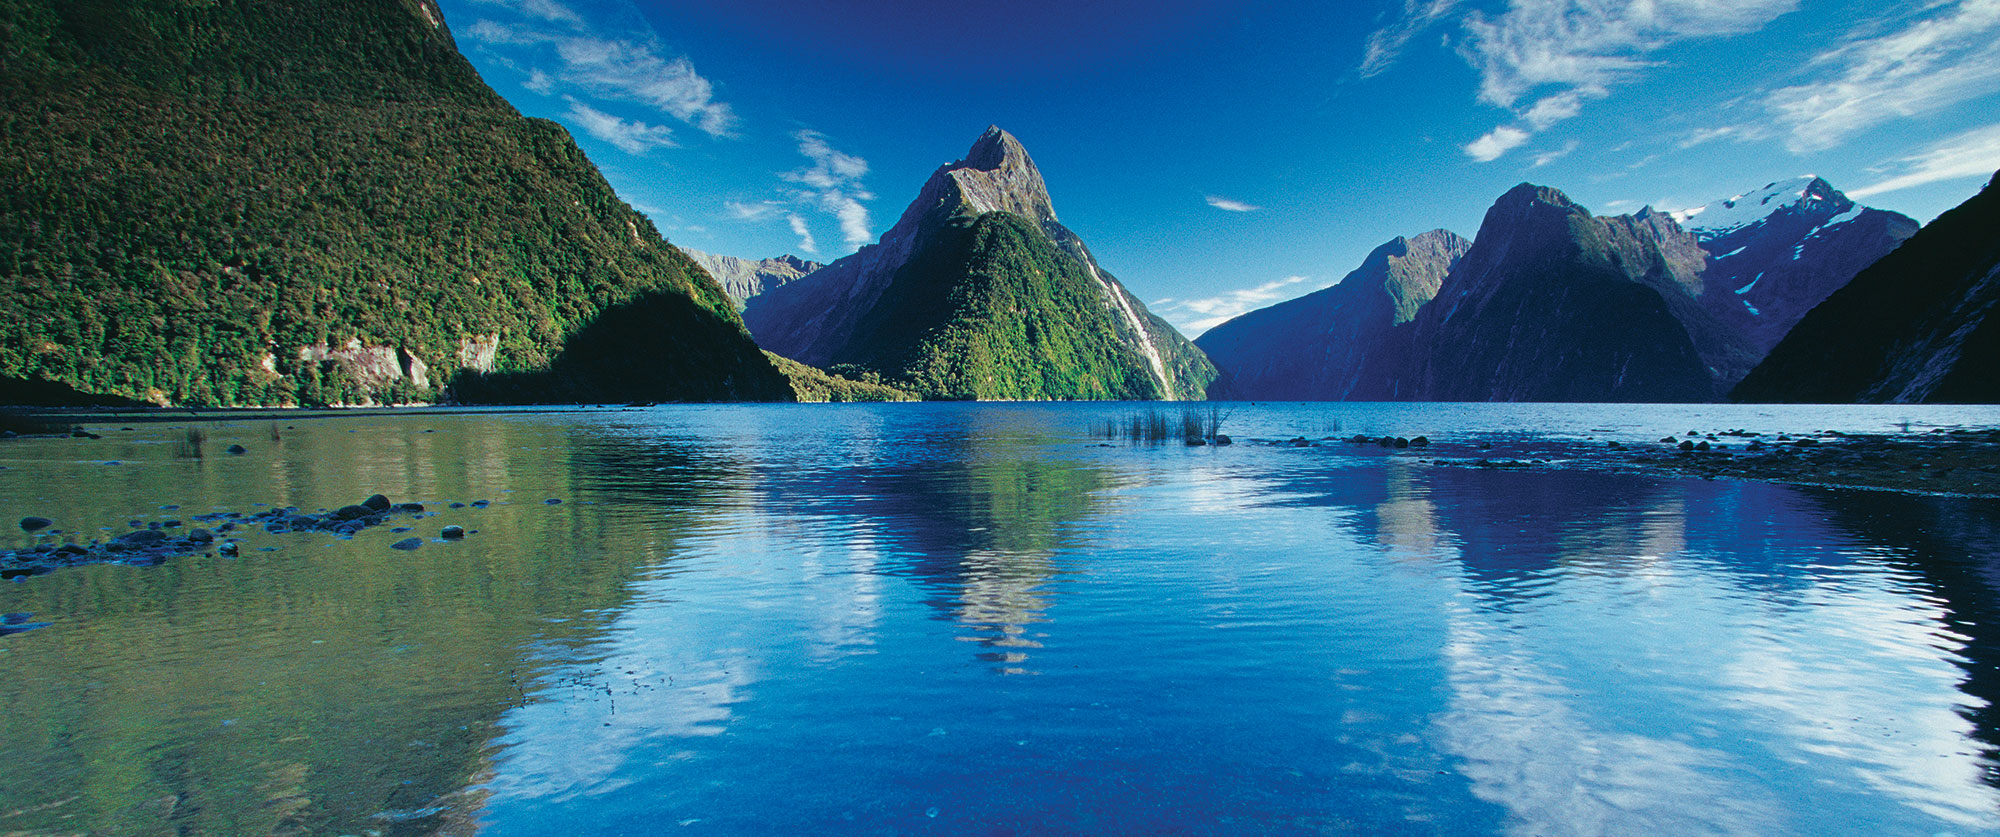 Honeymoon Adventure - New Zealand Cook Islands